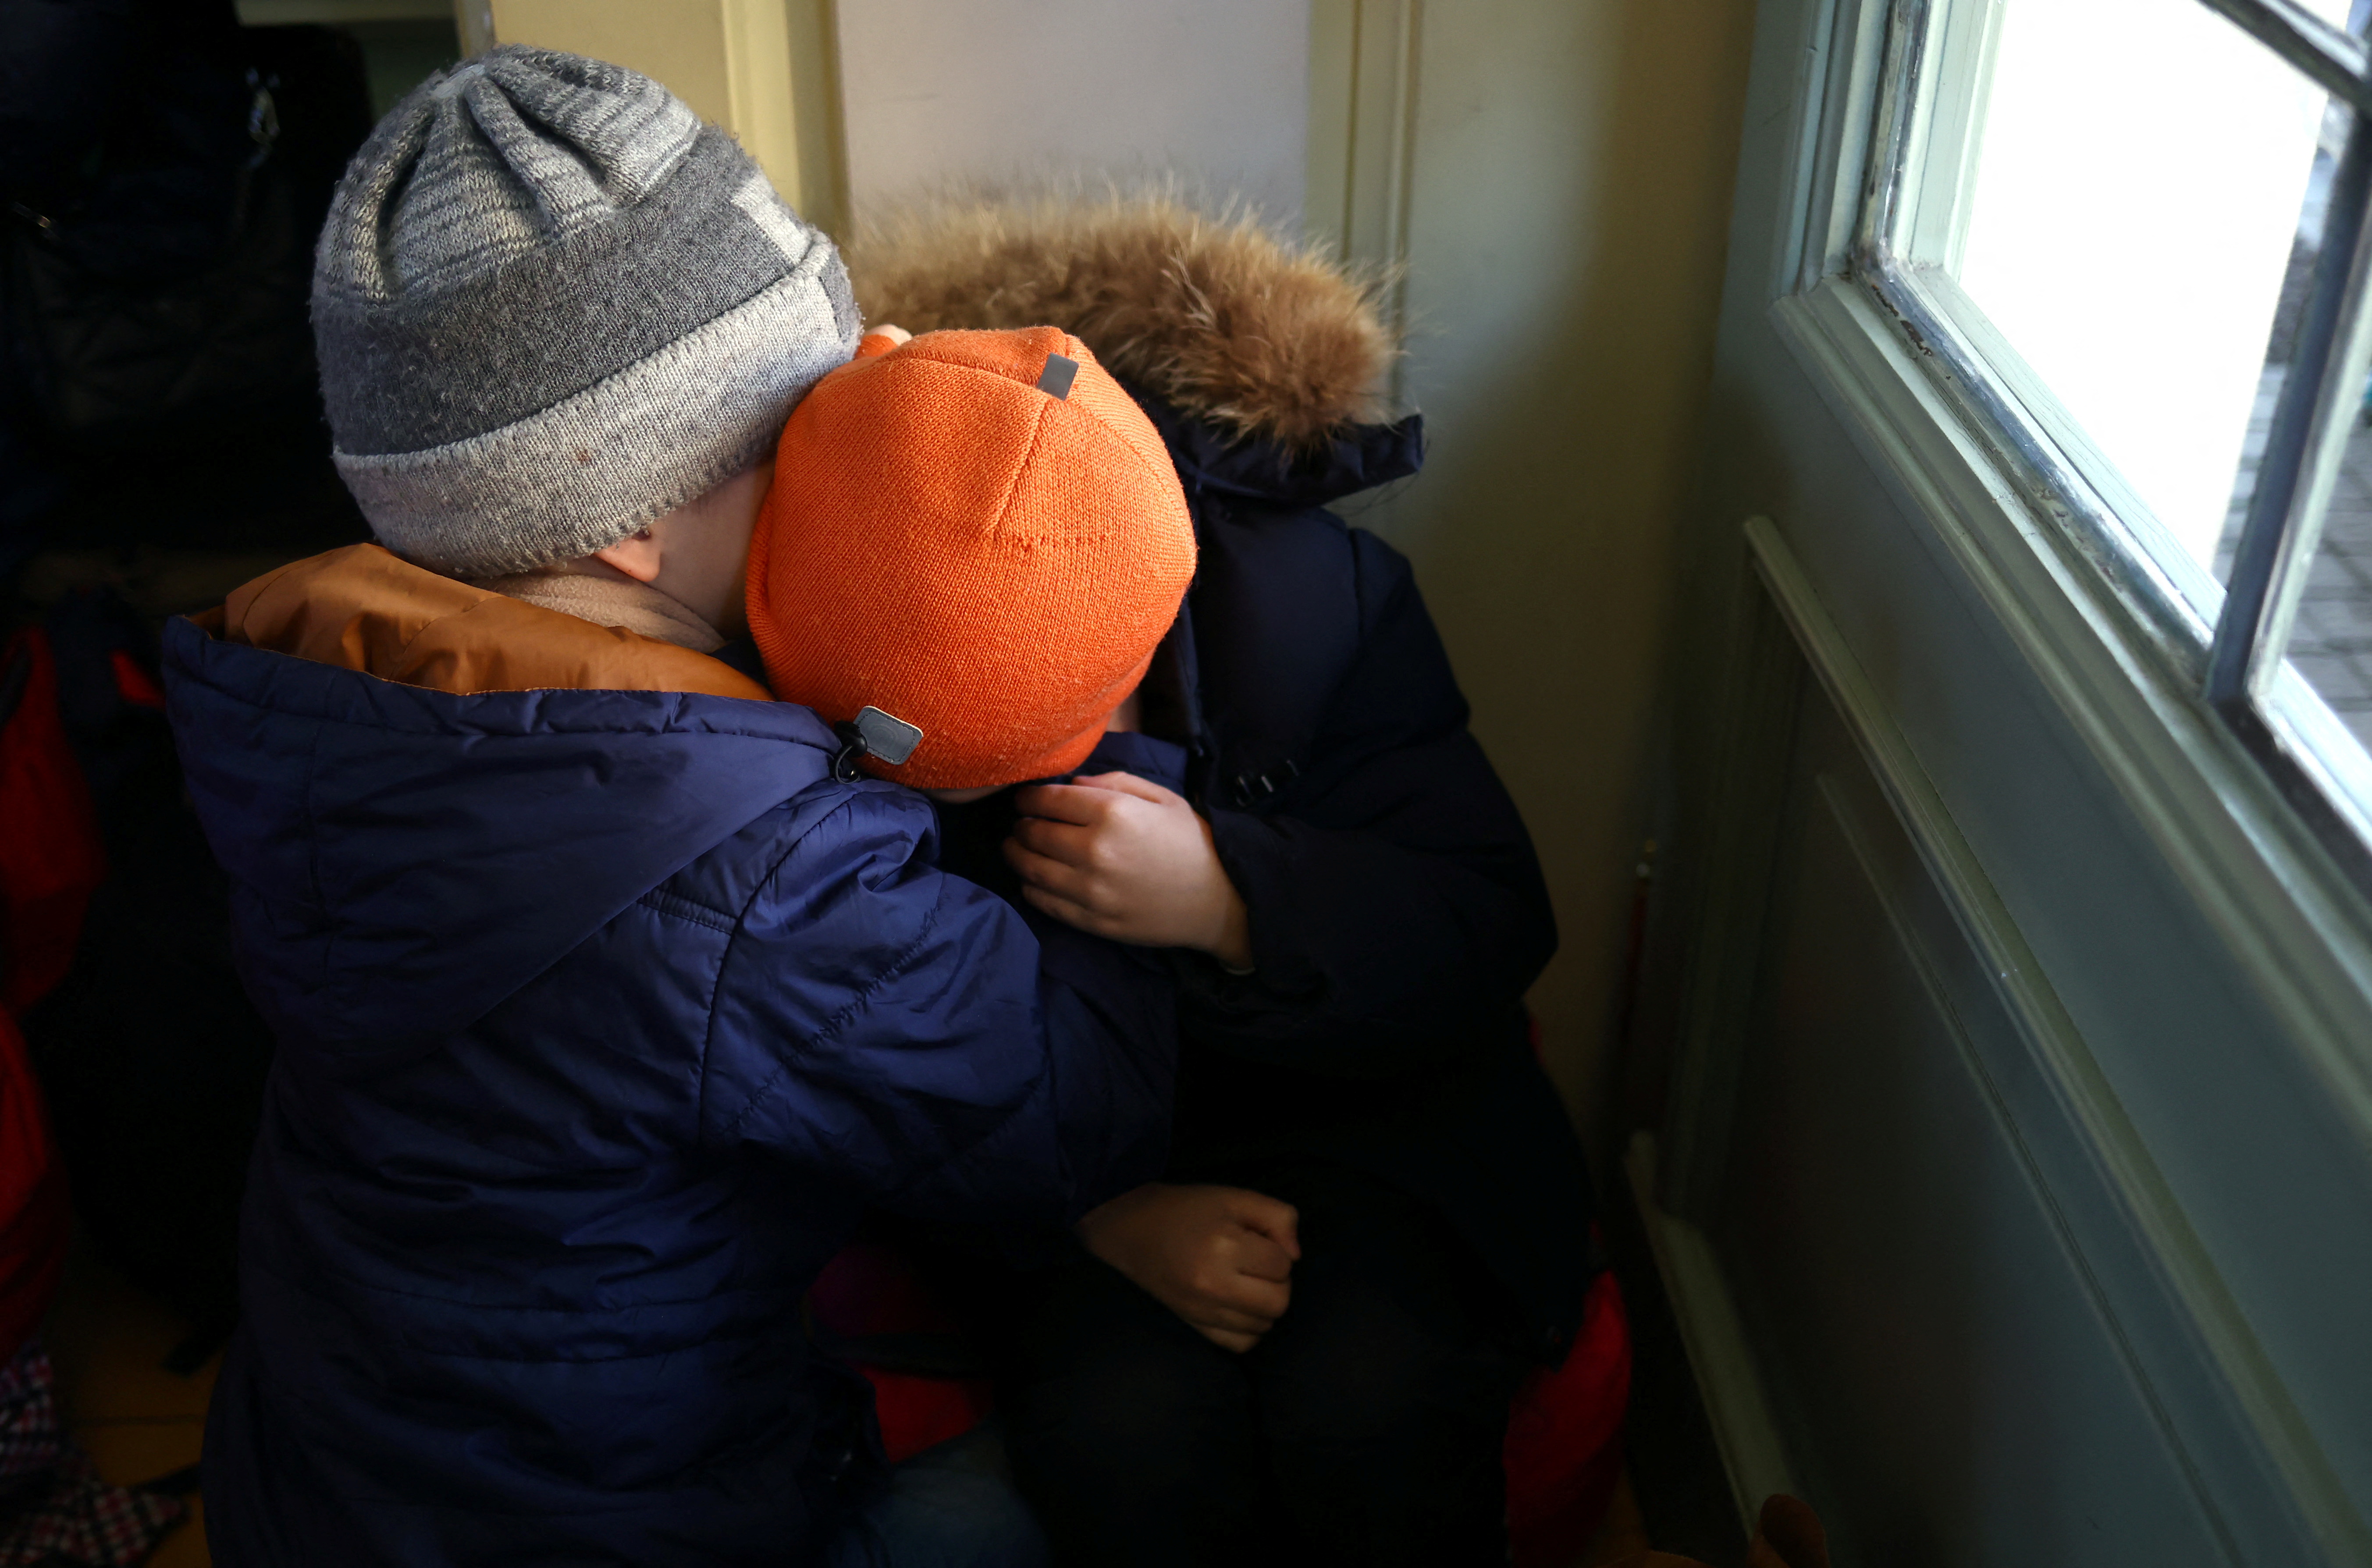 Niños refugiados ucranianos se abrazan en la estación de tren de Przemysl Glowny, tras huir de la invasión rusa de Ucrania, en Przemysl, Polonia 24 de marzo de 2022. REUTERS/Hannah McKay